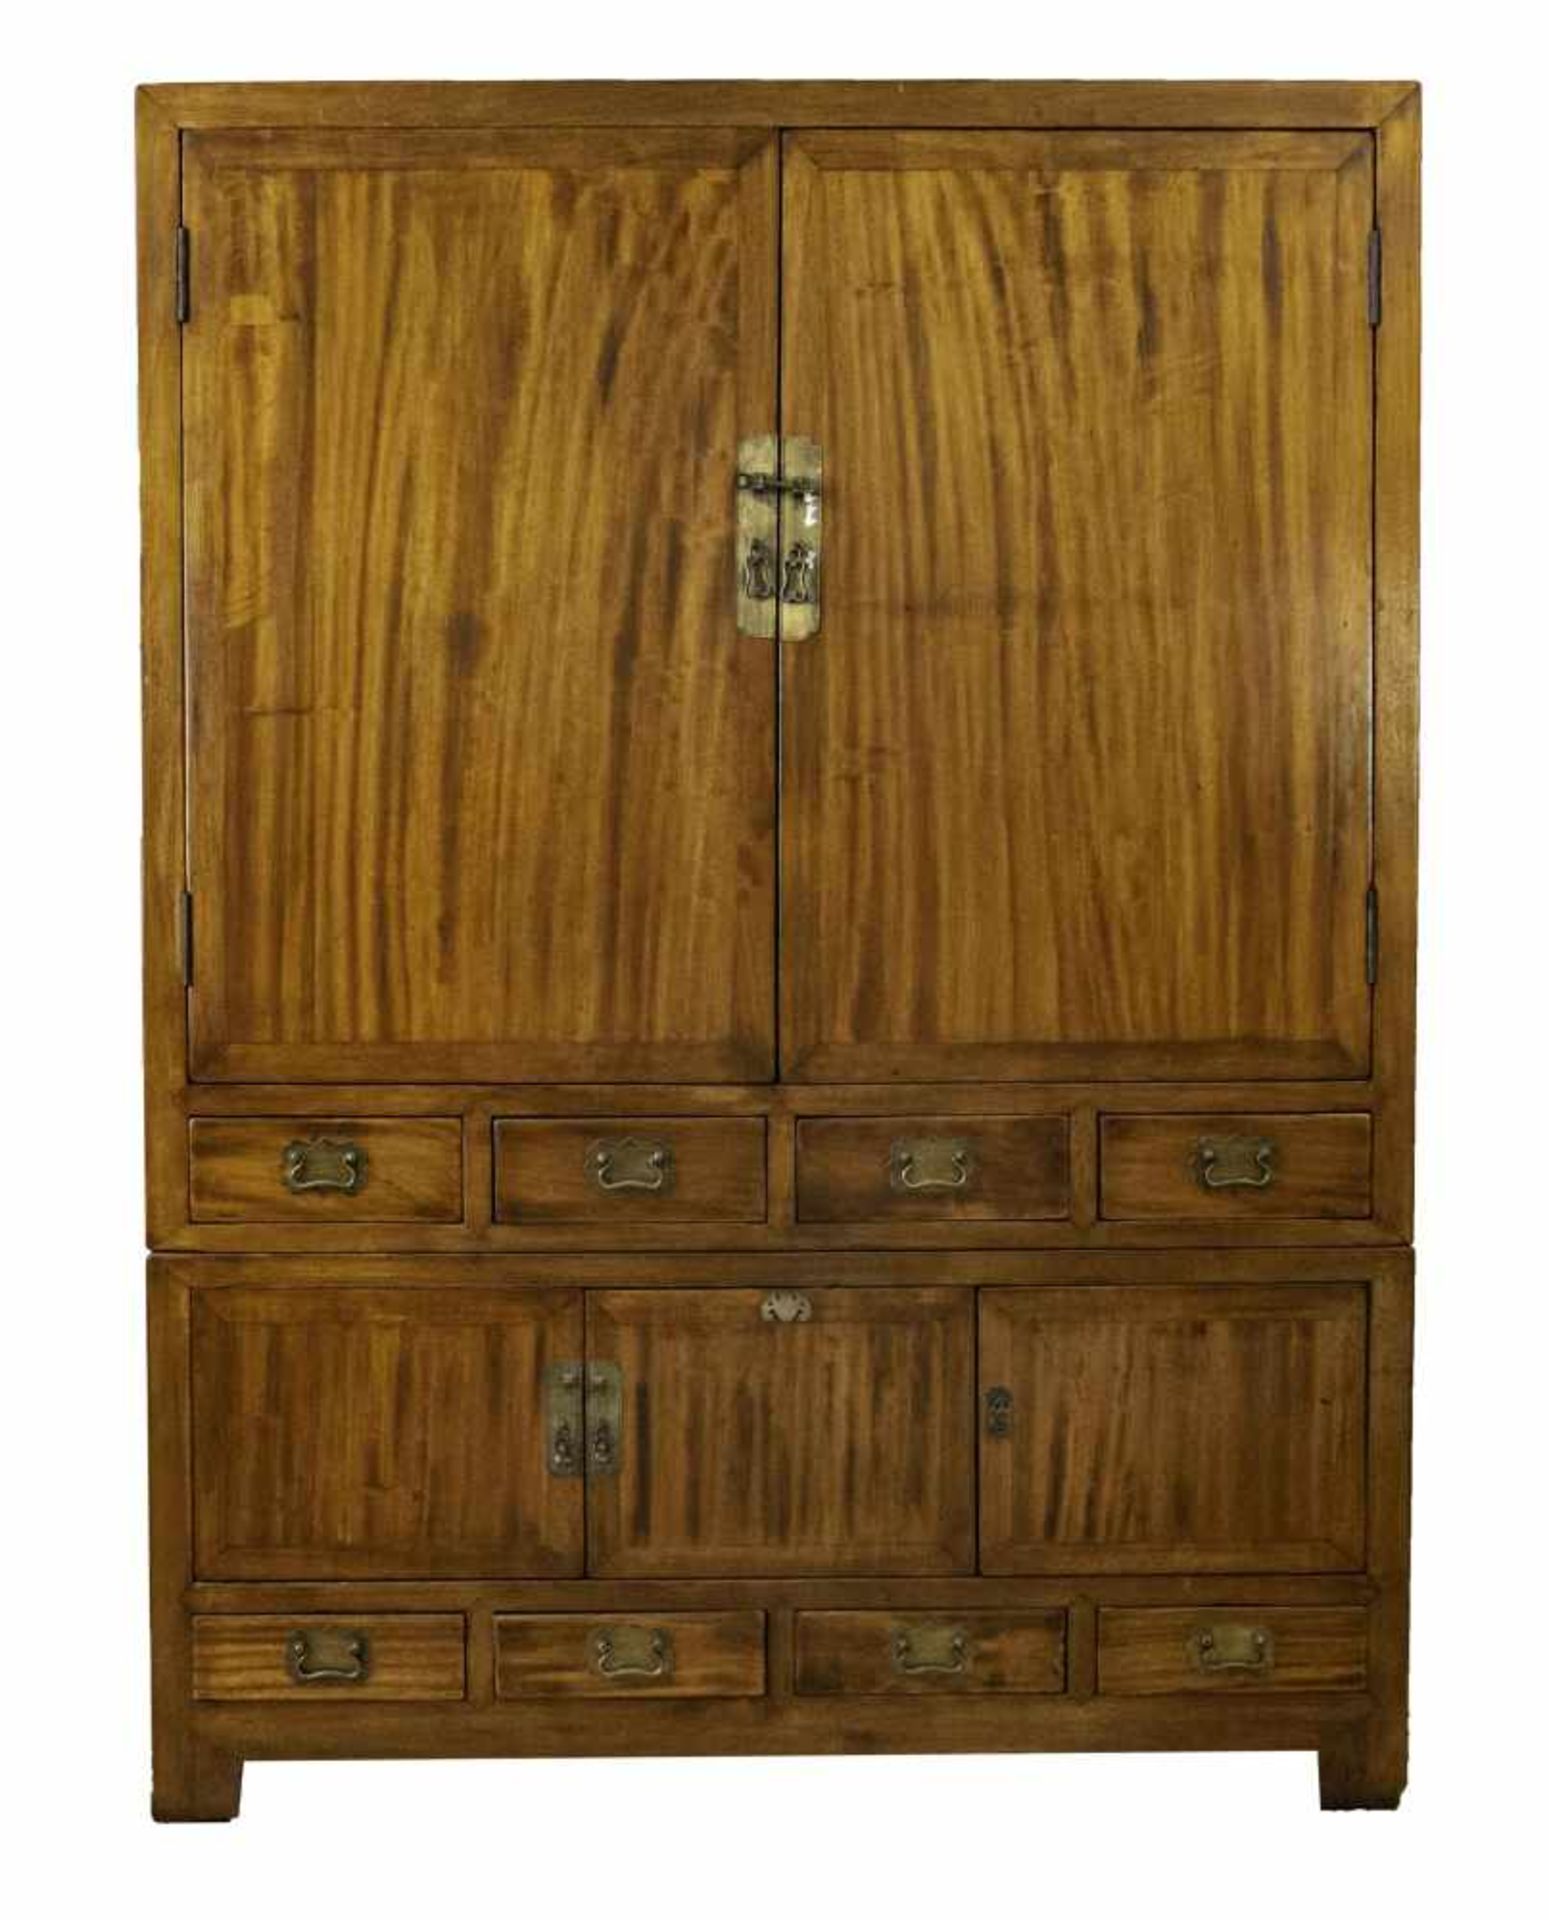 Kabinettschrank, Asien um 1910, Kampferholz, Korpus mit fünf Türen und acht Schubladen,192 x 143 x